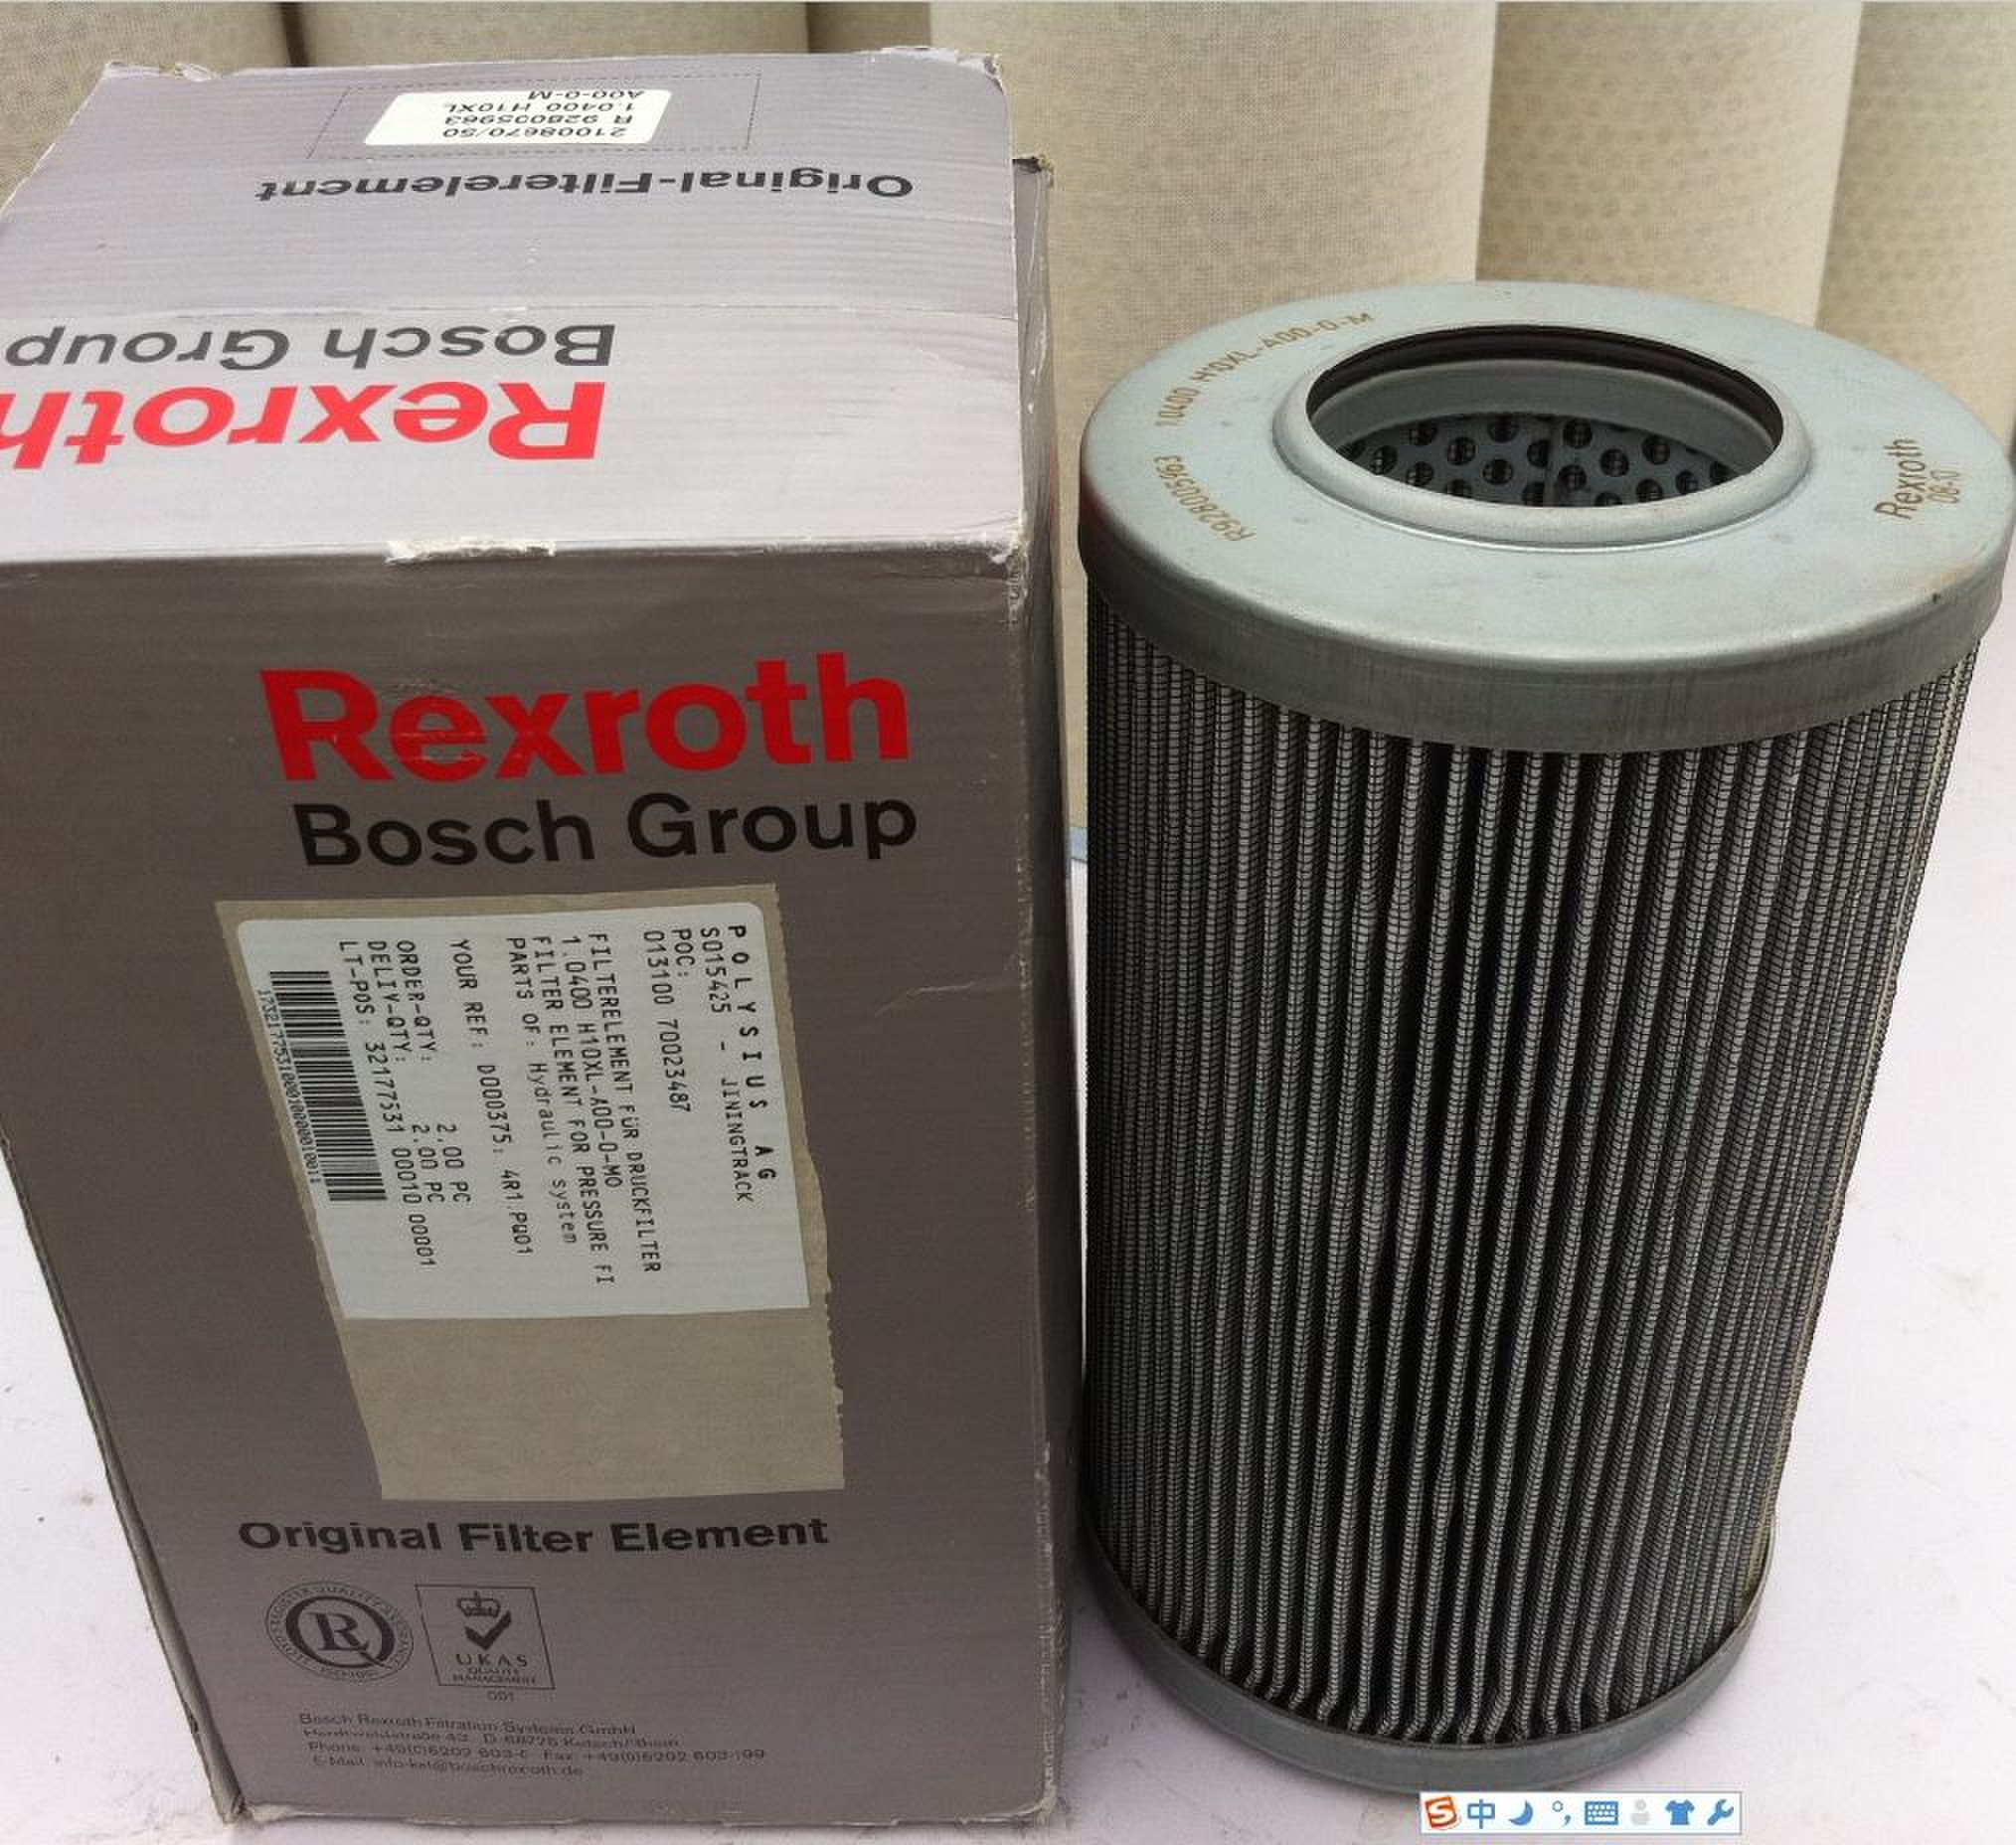 REXROTH BOSCH GROUP Filterelement R928005874; 1.0100 H20XL; A00-0-M 